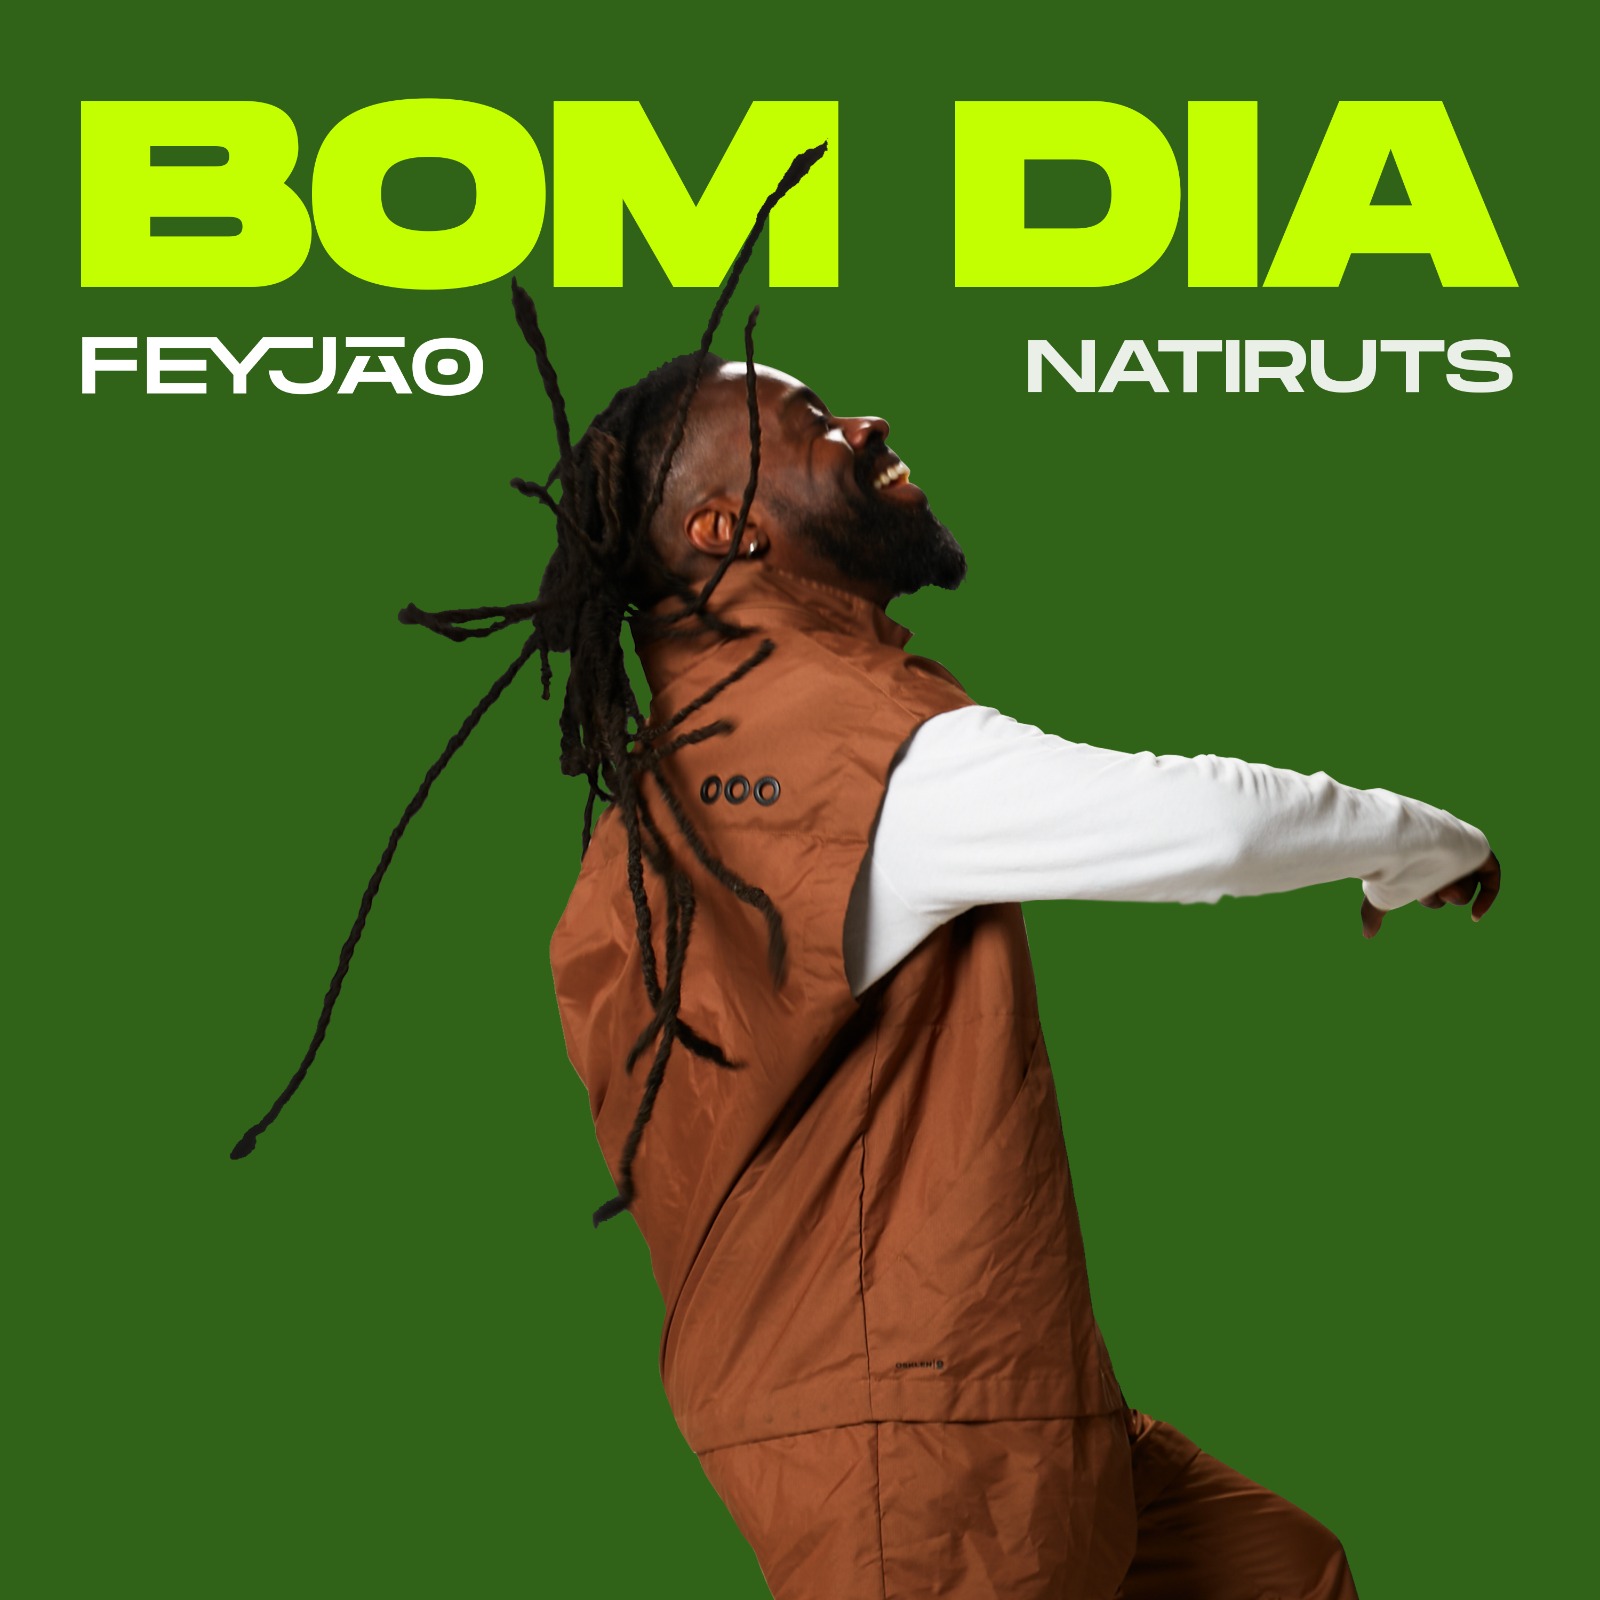 Feyjão libera segundo single de novo álbum (Foto: Divulgação)